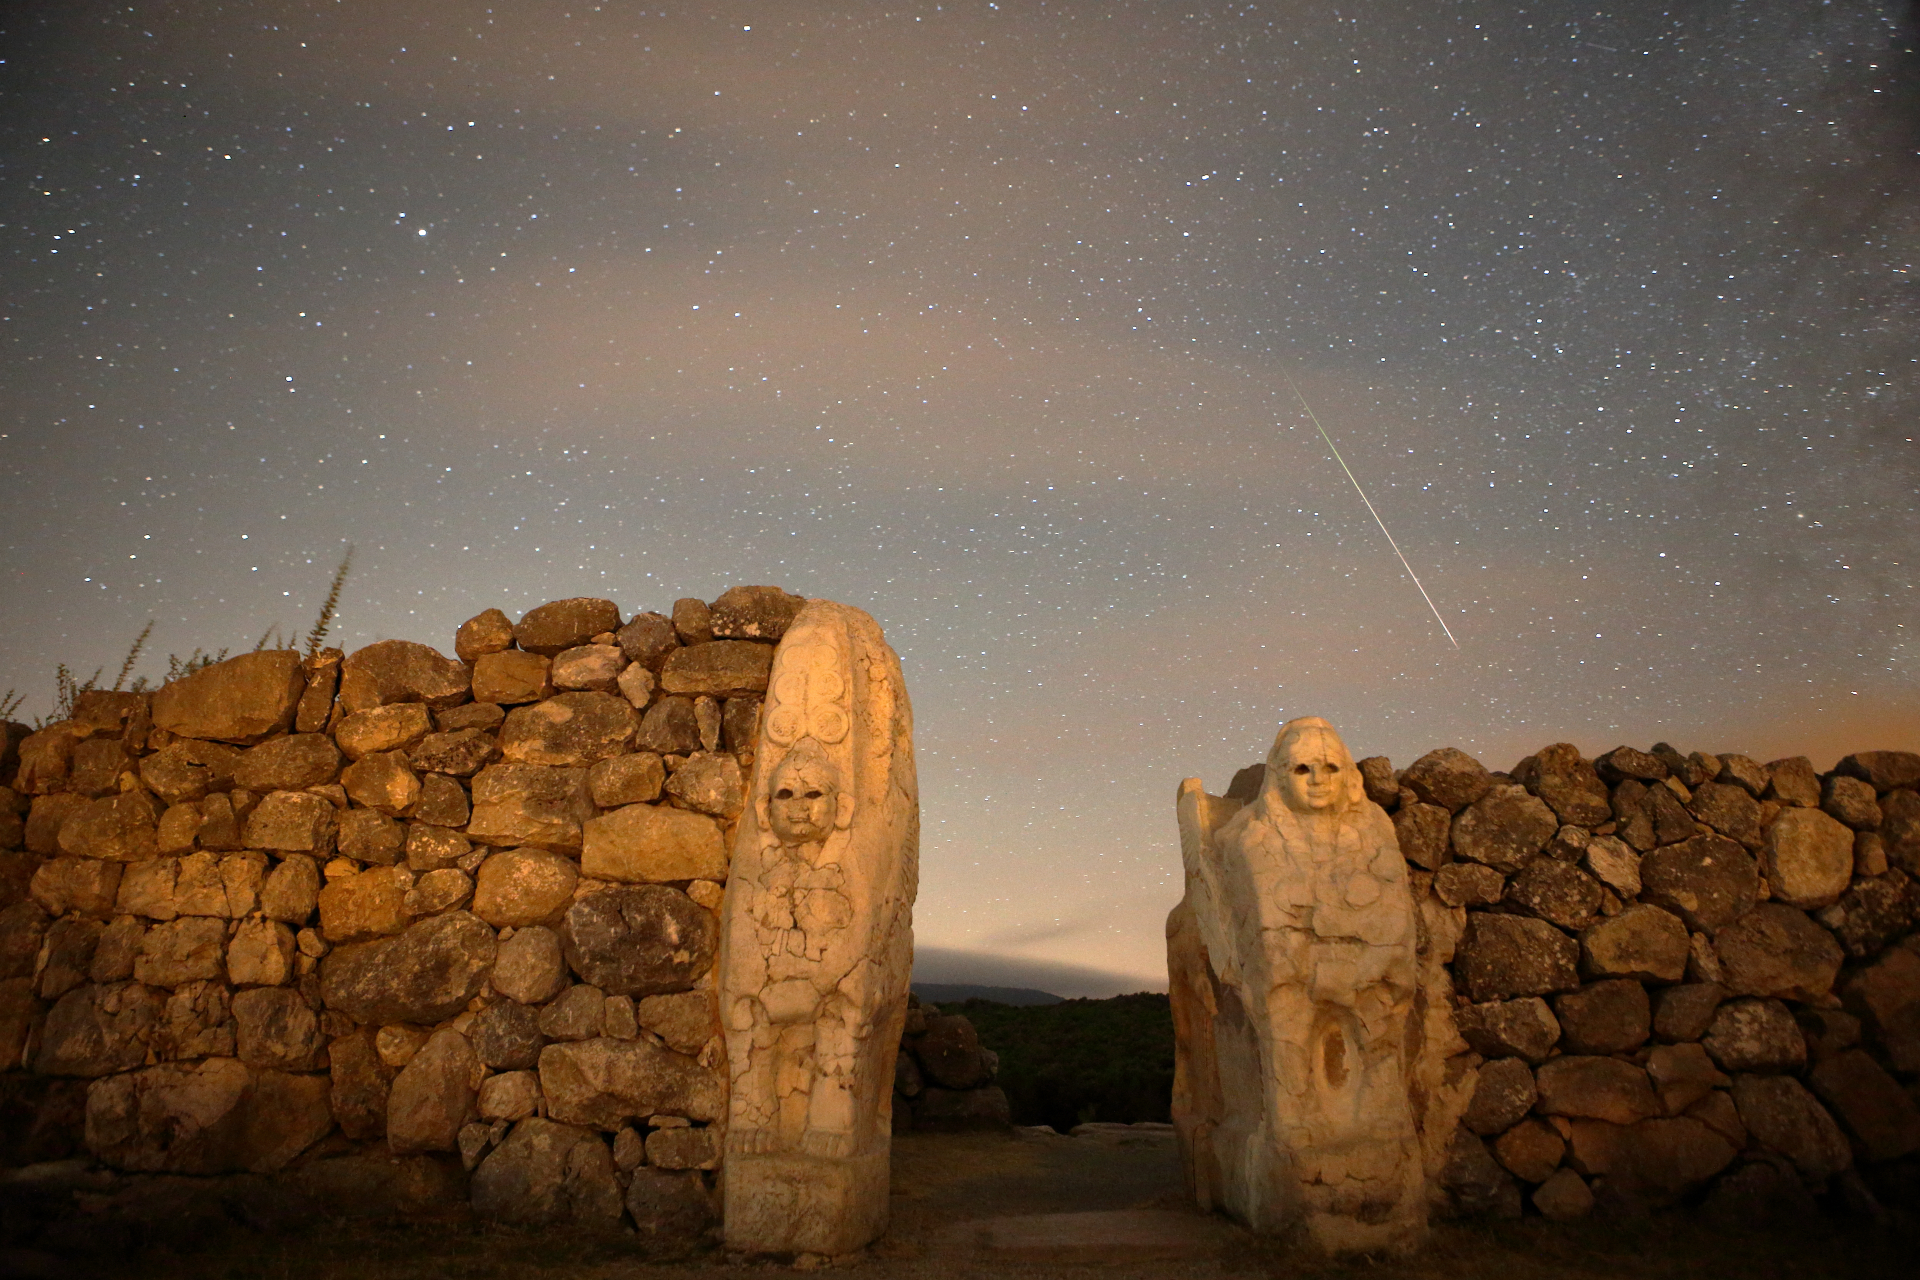 ペルセウス座流星は、岩に彫られた 2 人の人物とともに石垣の上の空を横切って流れます。